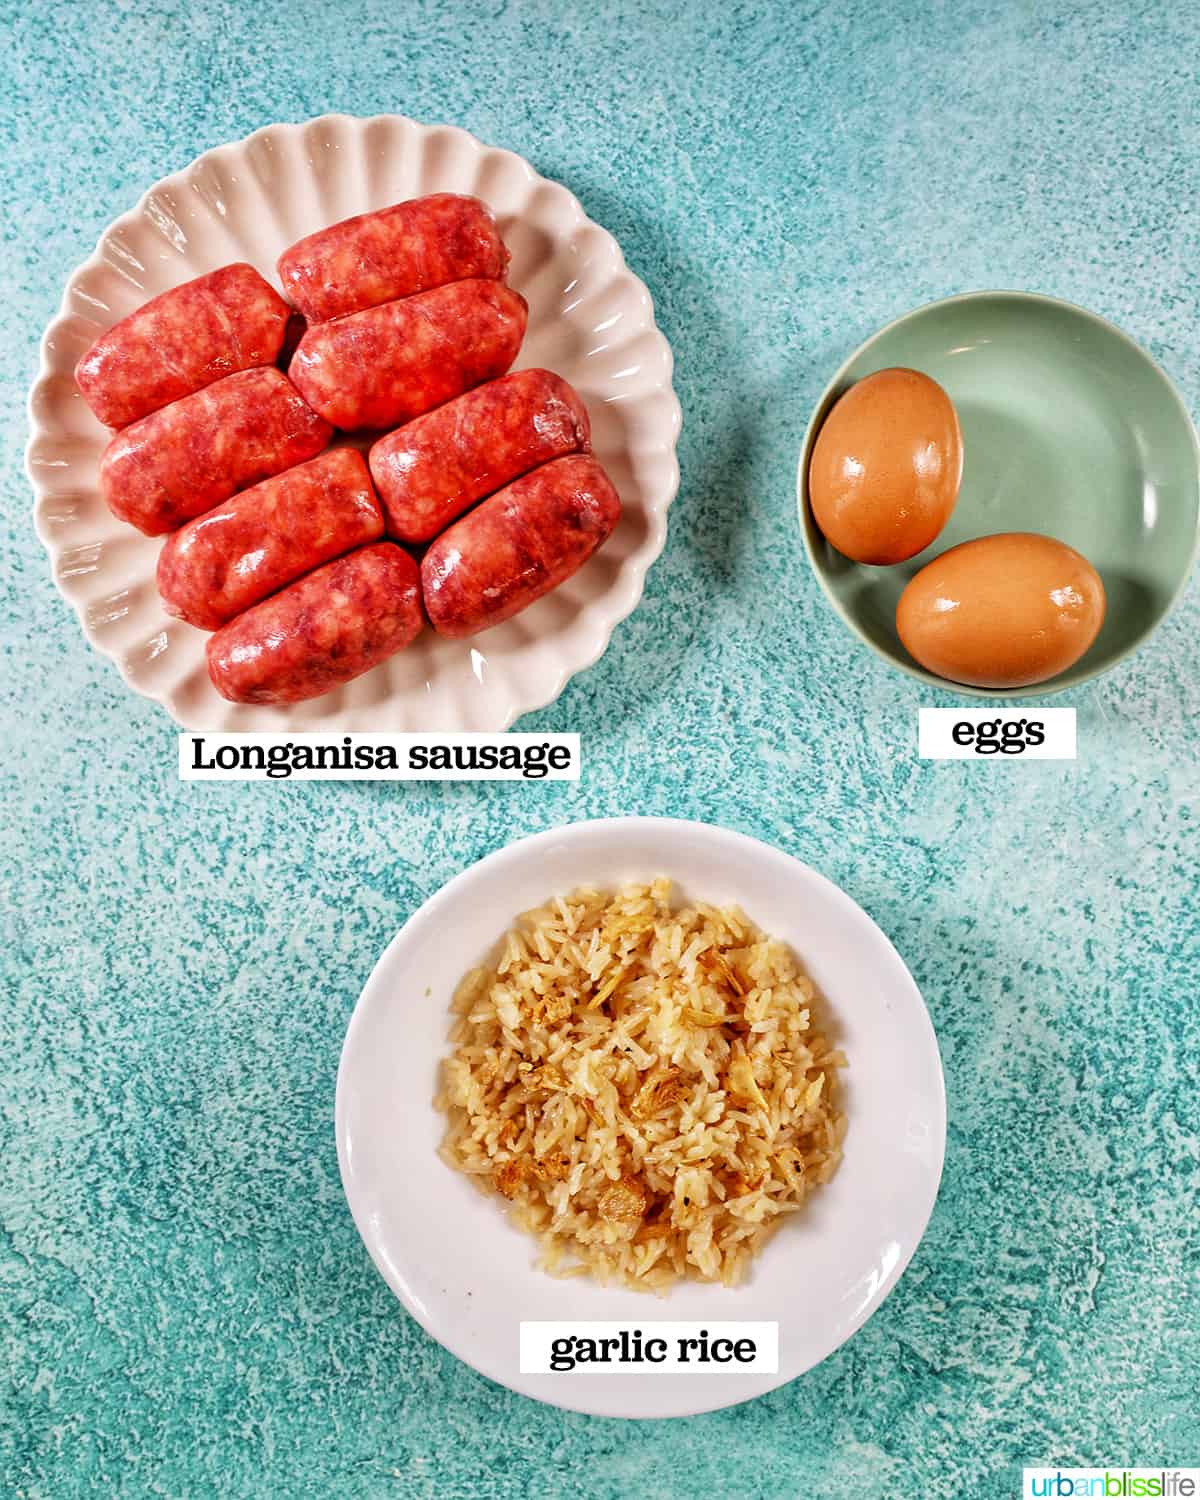 longanisa, eggs, and garlic rice to make longsilog filipino breakfast.